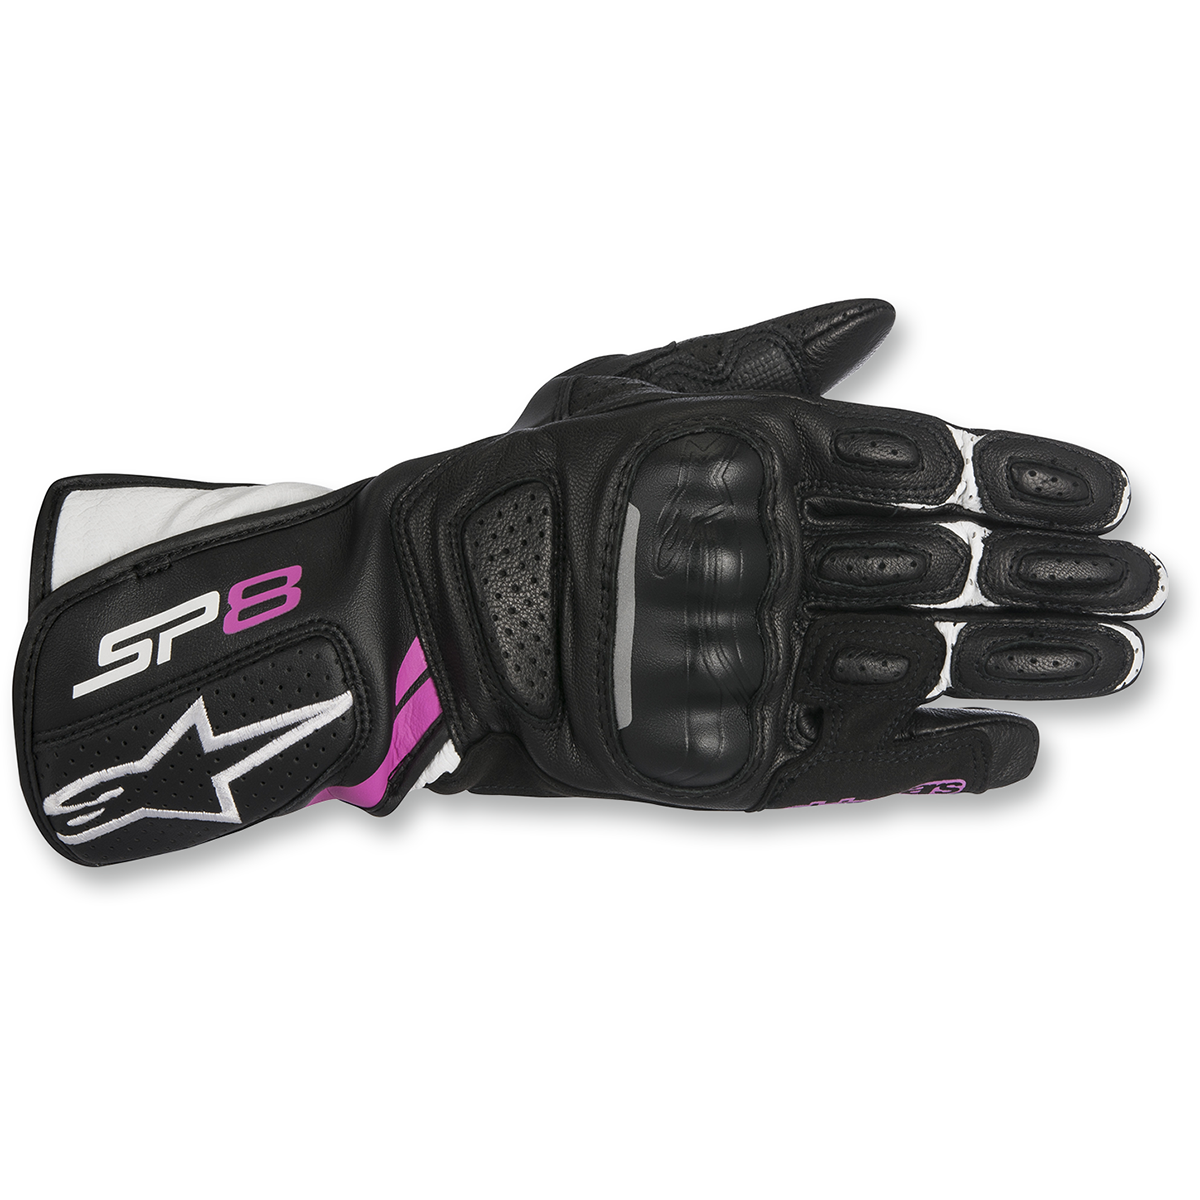 Stella SP-8 V2 Leather Gloves